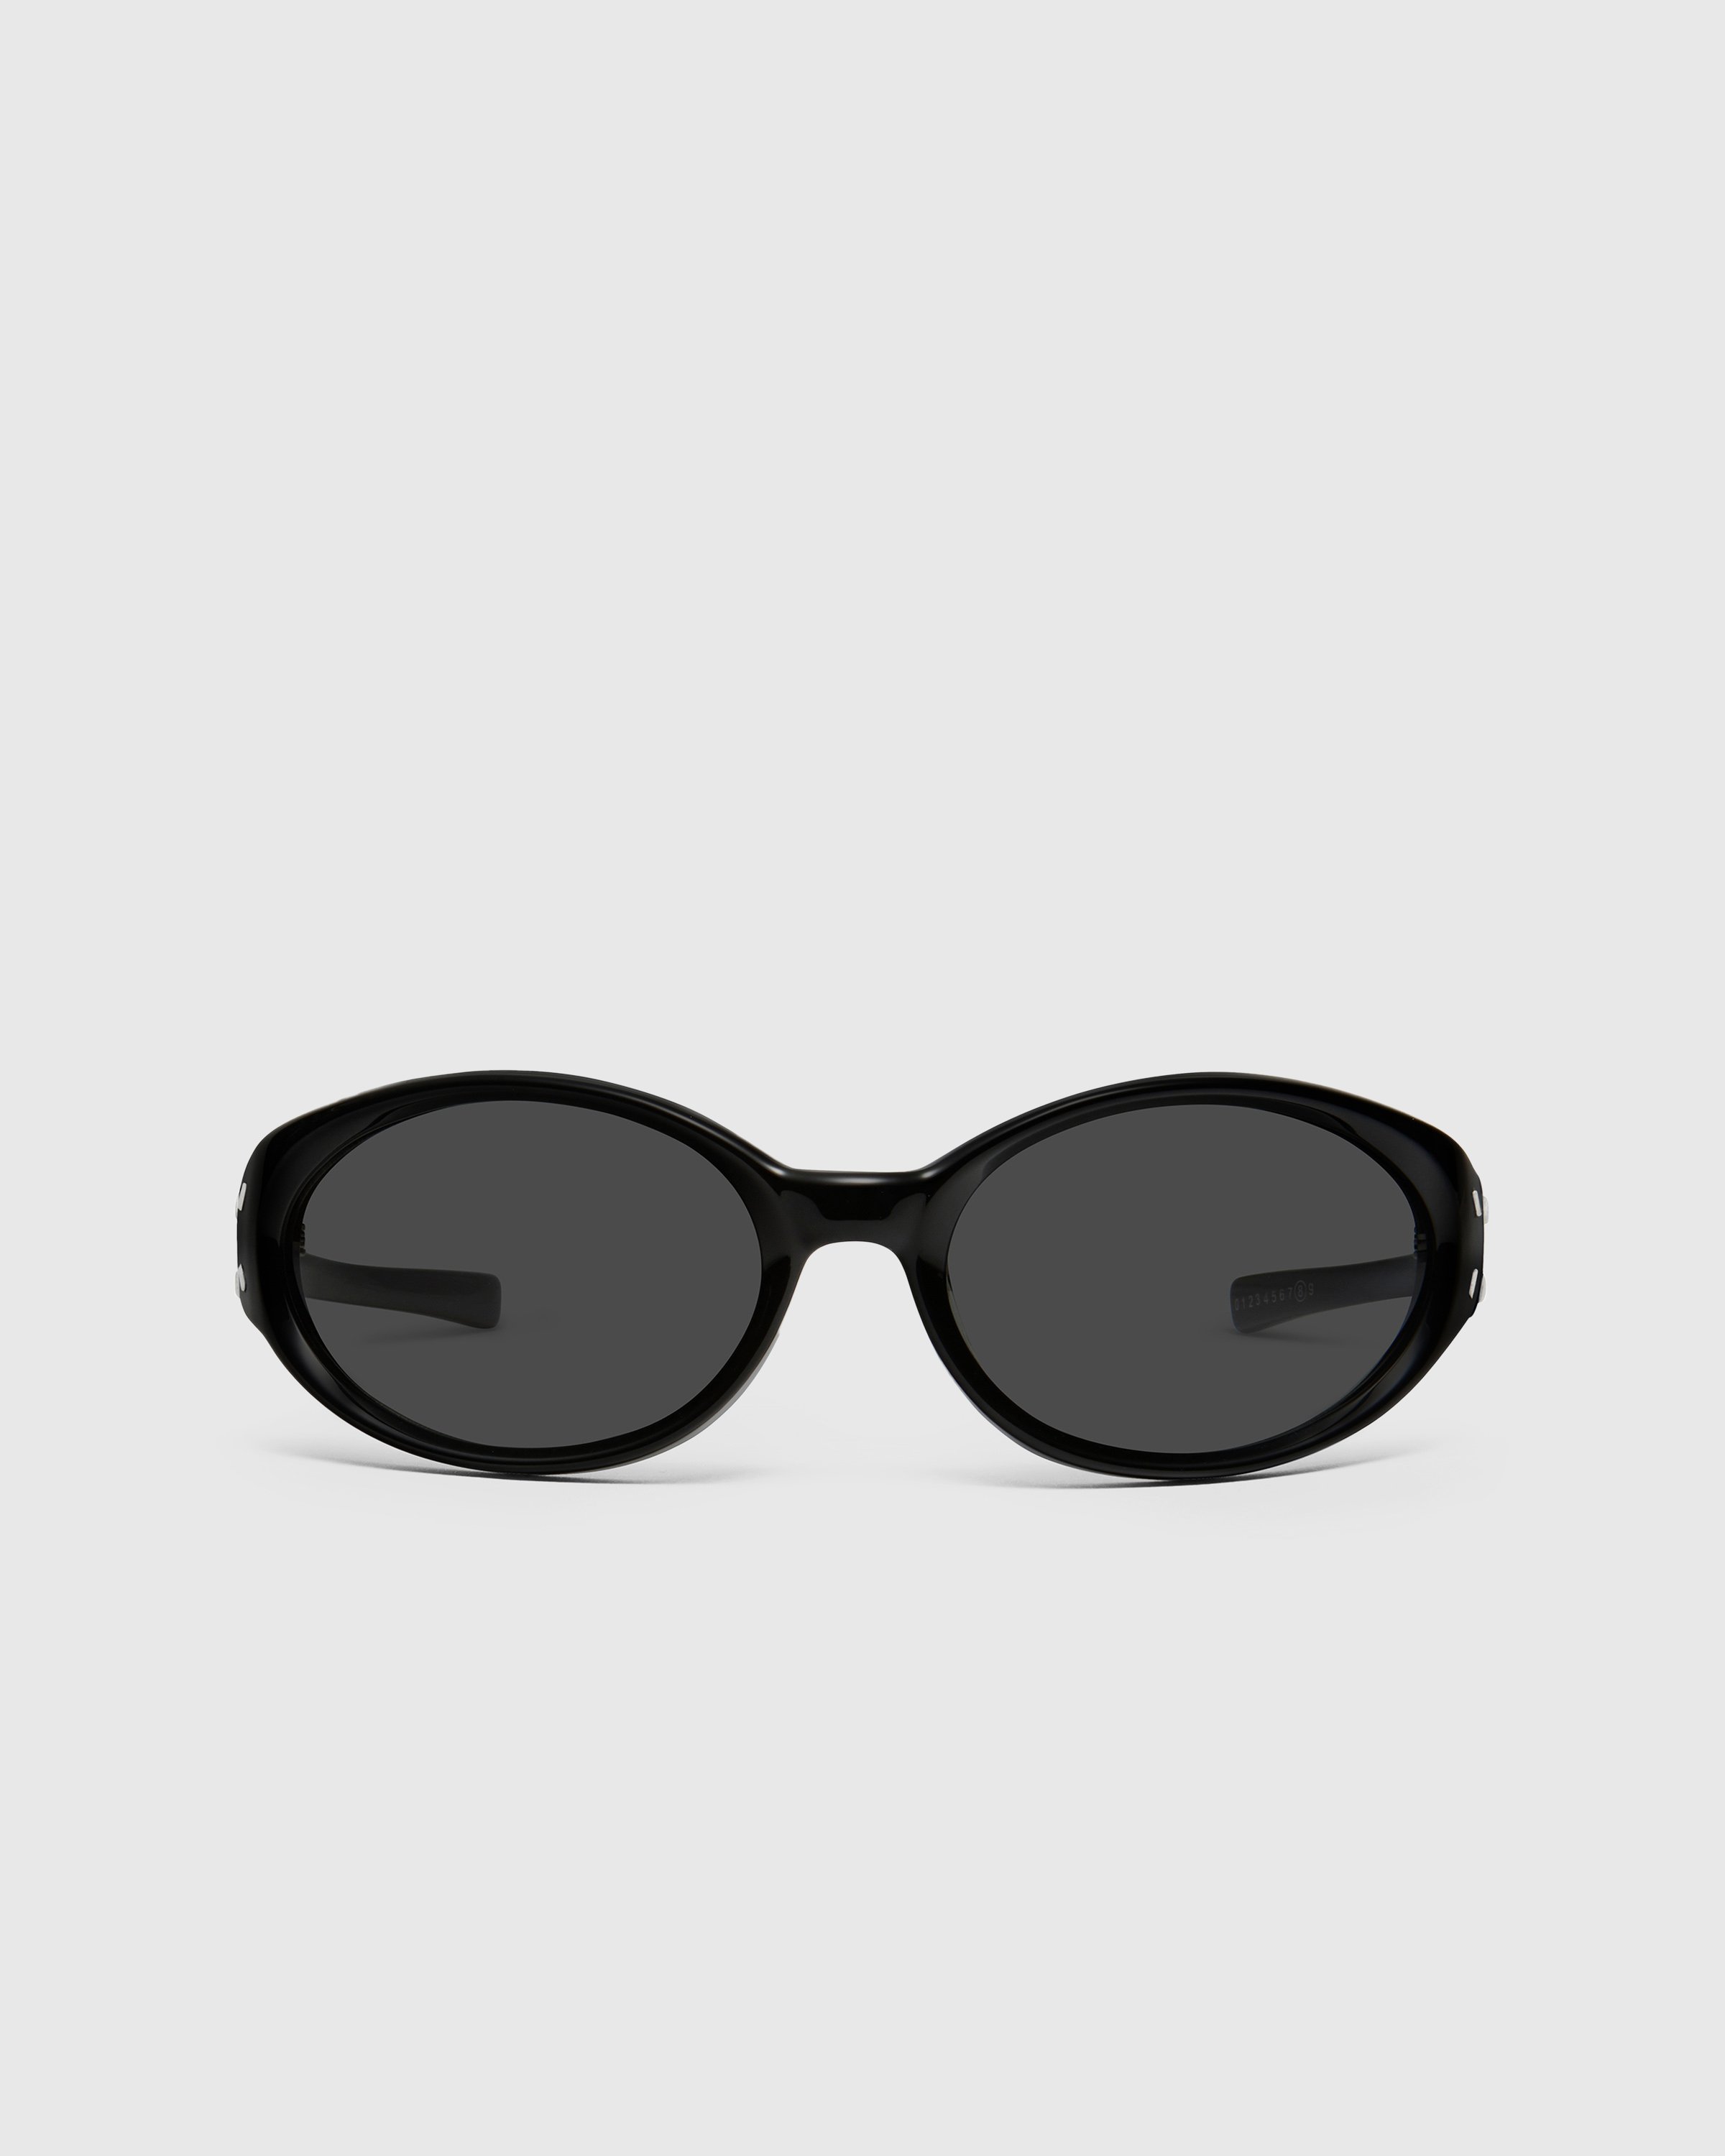 Maison Margiela x Gentle Monster - Sunglasses MM104-01 - Accessories - Black - Image 1